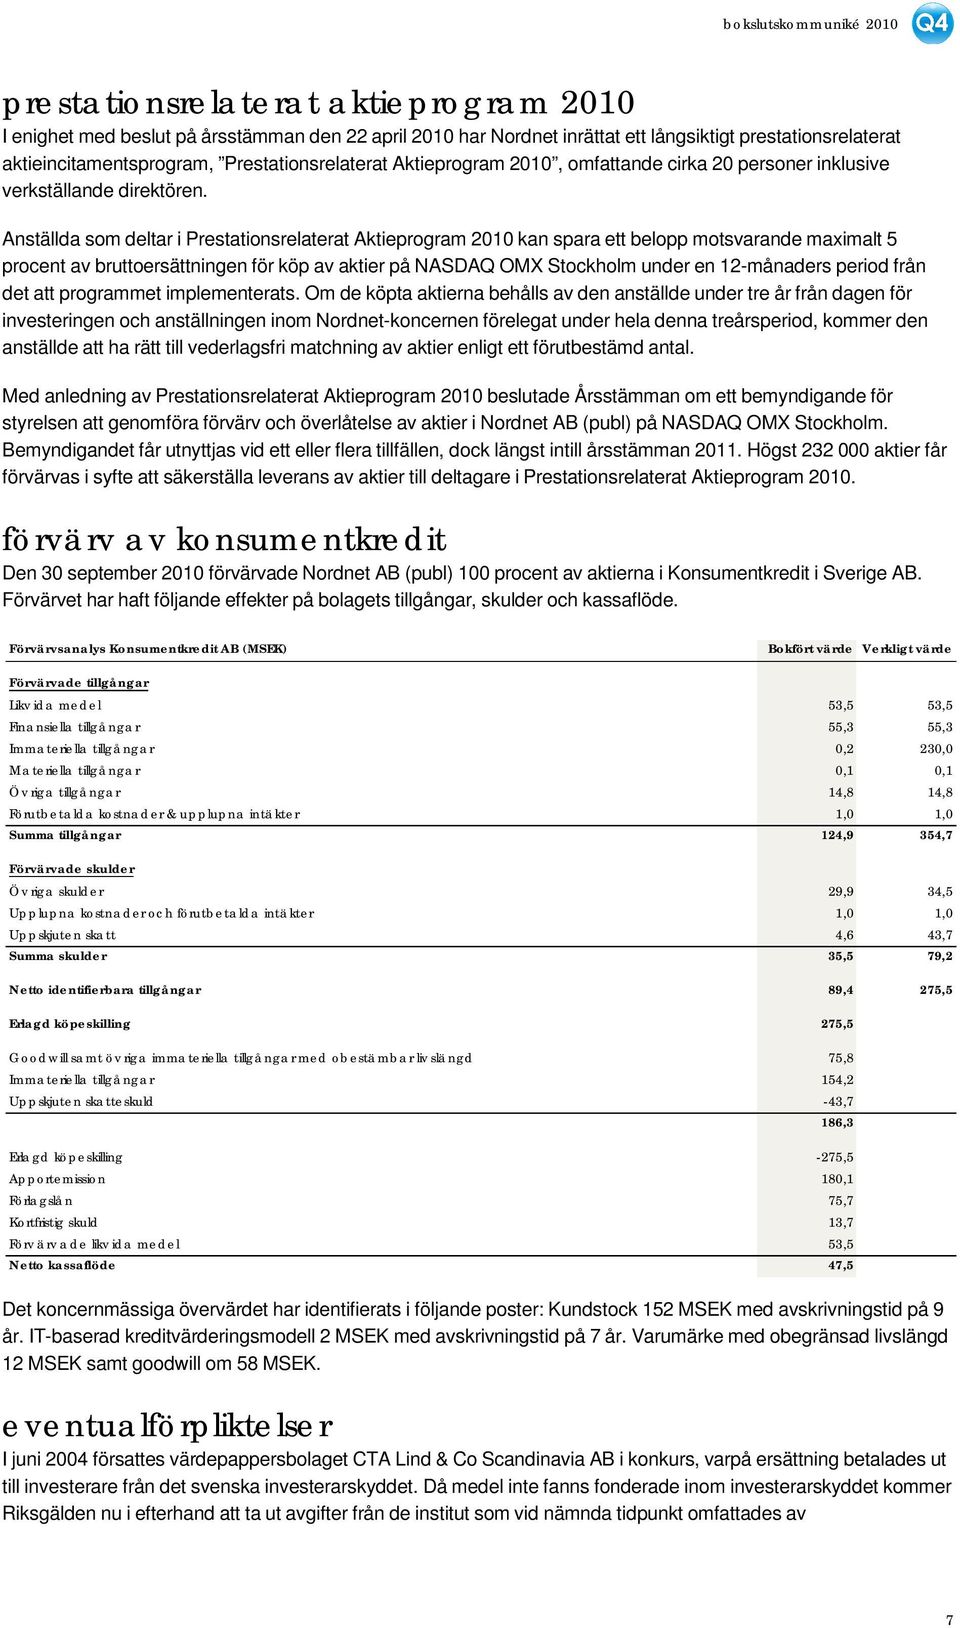 Anställda som deltar i Prestationsrelaterat Aktieprogram 2010 kan spara ett belopp motsvarande maximalt 5 procent av bruttoersättningen för köp av aktier på NASDAQ OMX Stockholm under en 12-månaders